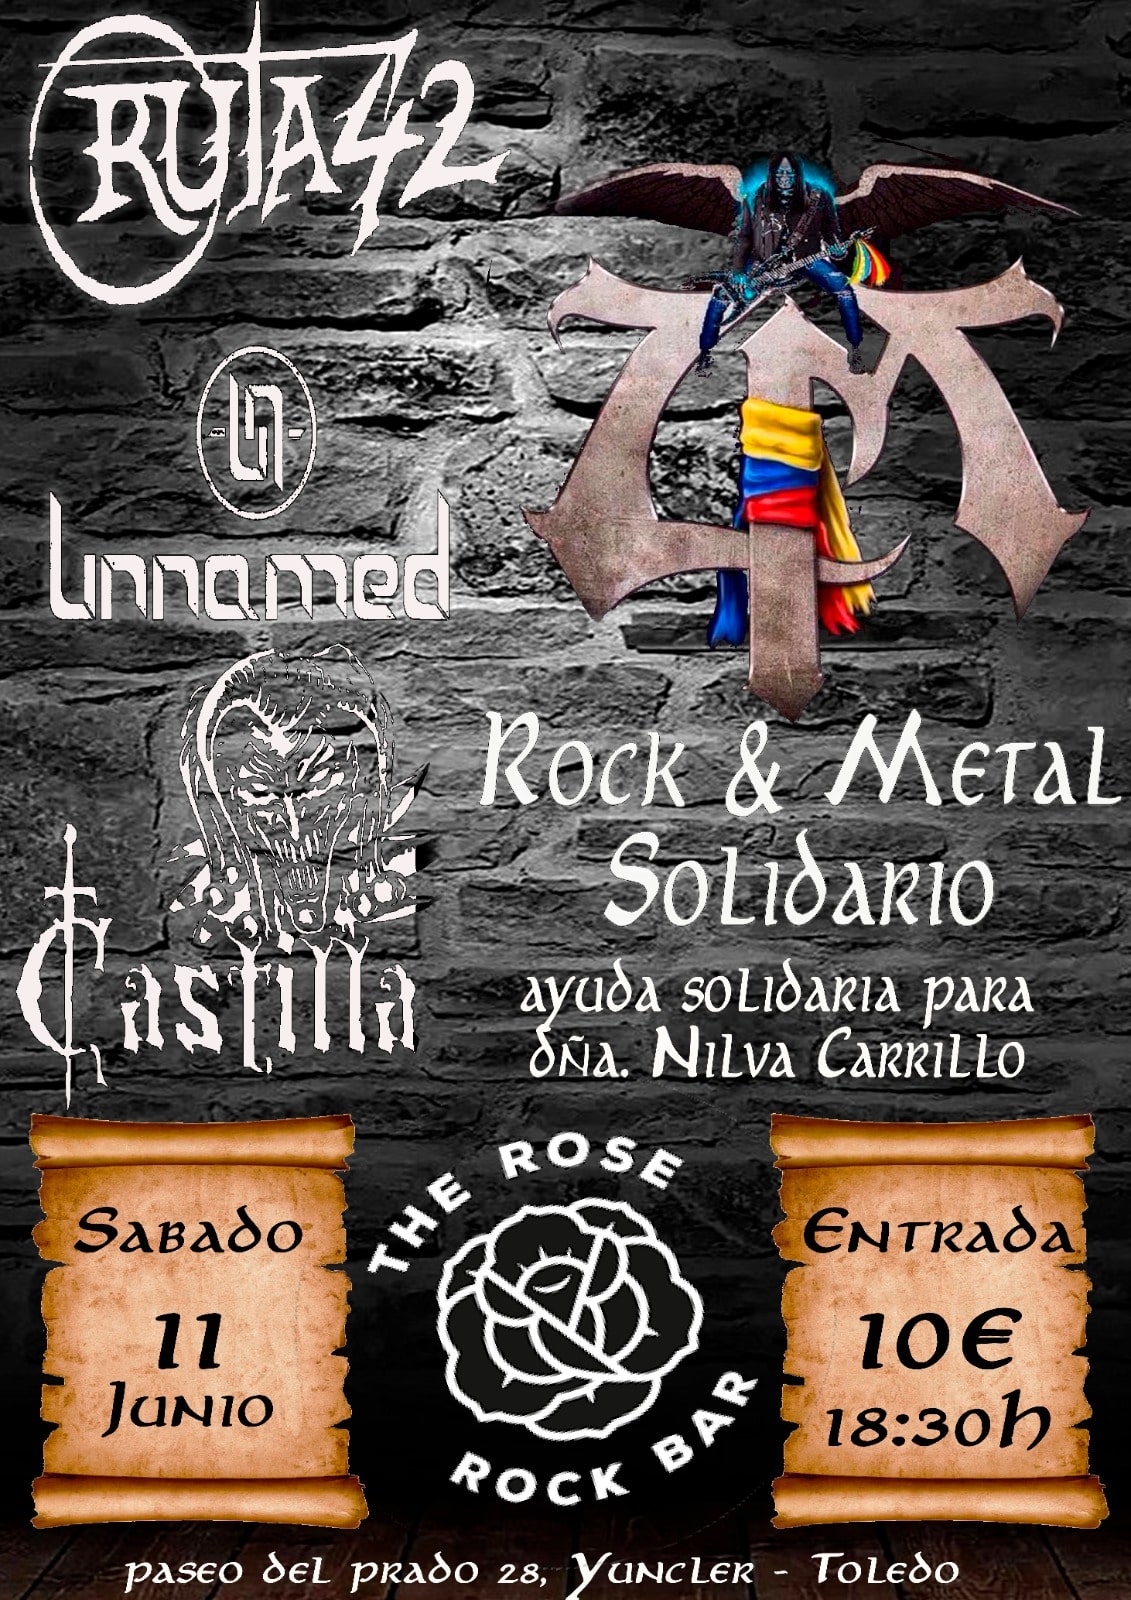 Evento solidario Rock & Metal